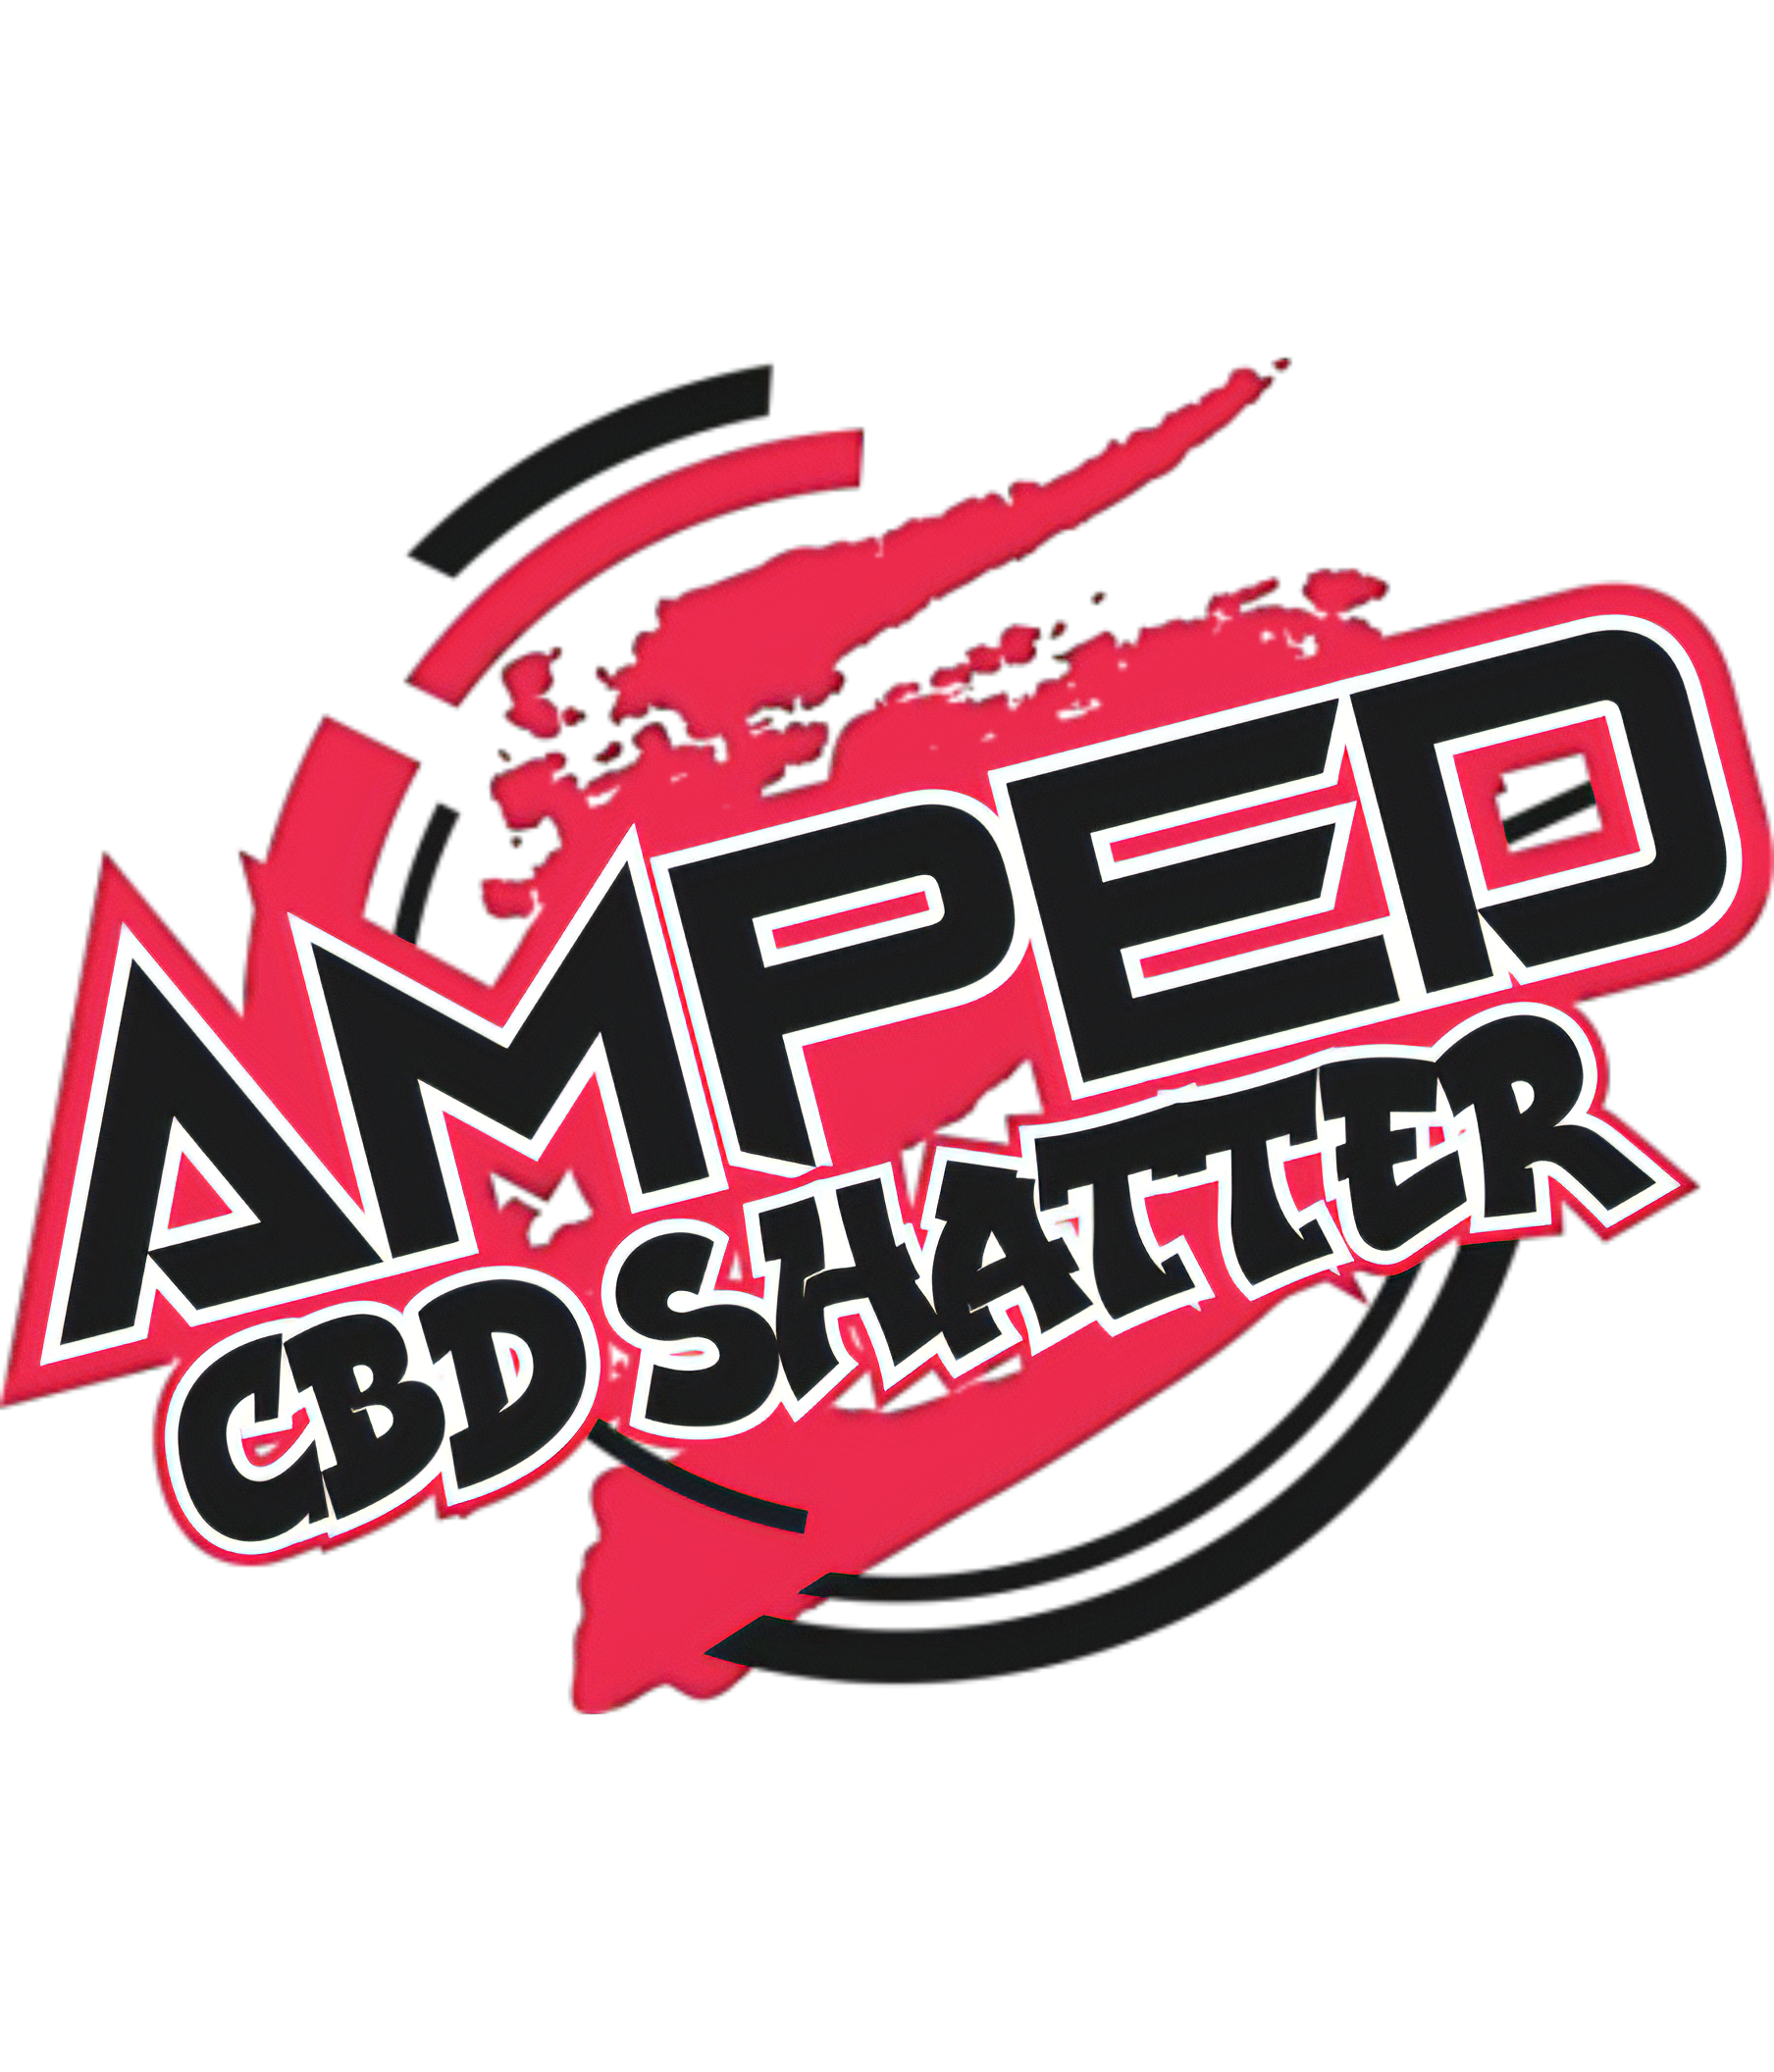 Amped CBD